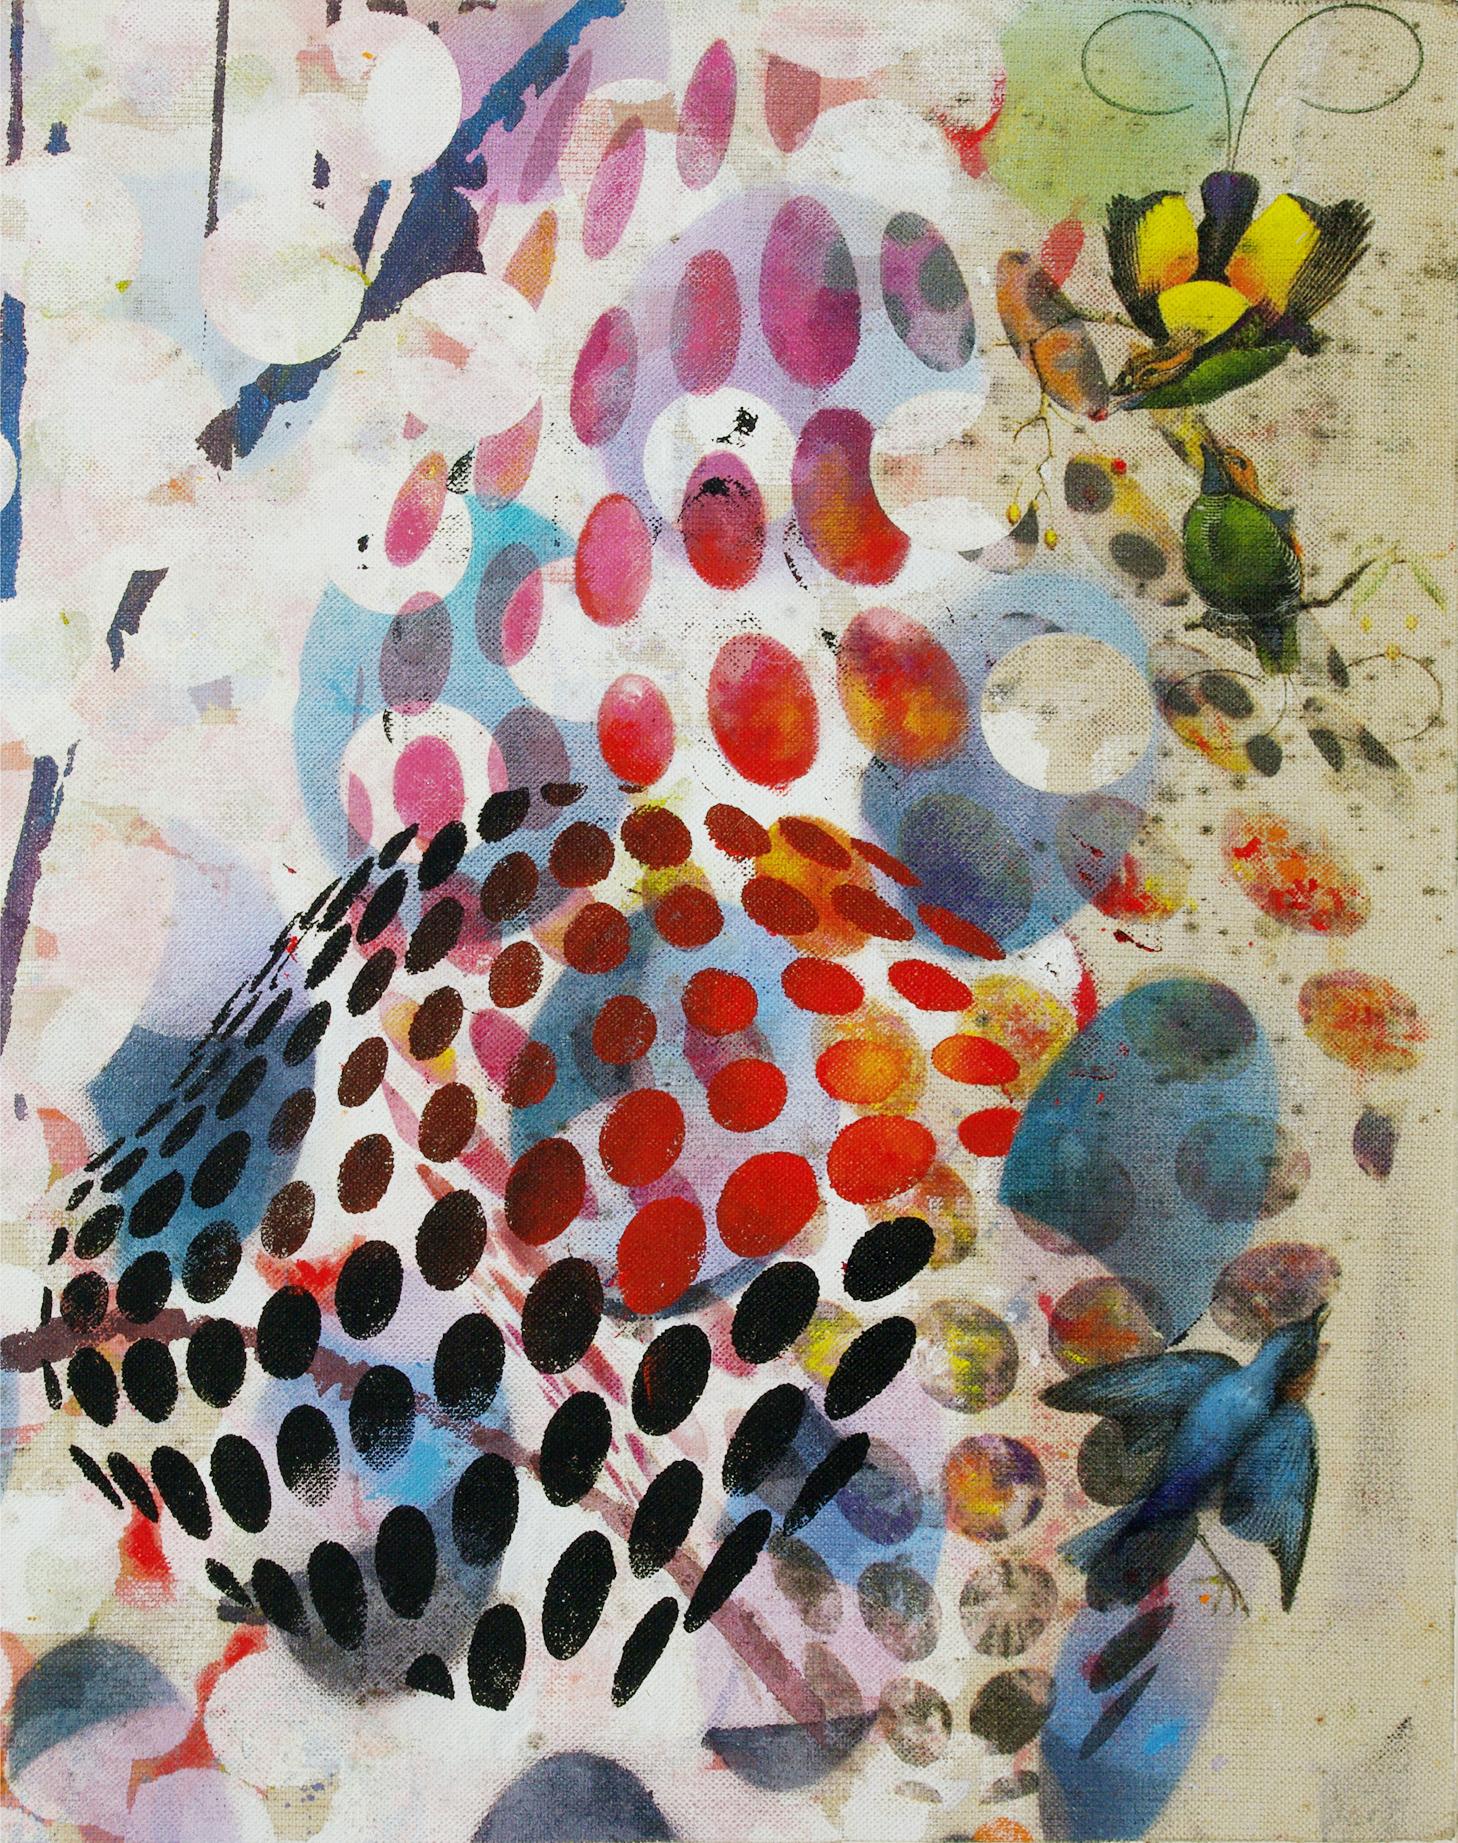 Oiseaux 026 - Contemporain, abstrait, expressionniste, moderne, art de la rue, surréaliste